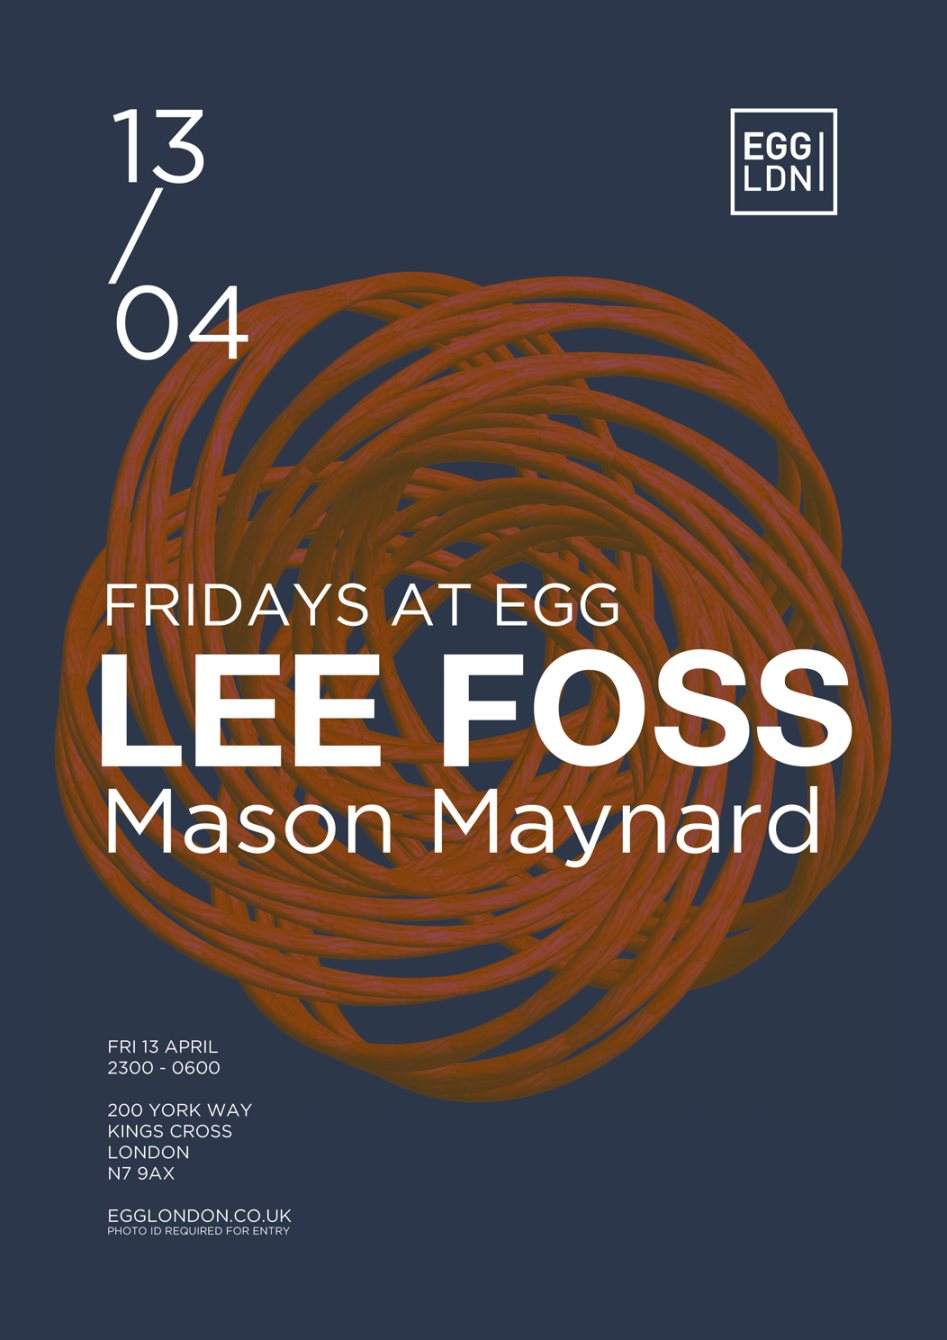 Fridays at Egg: Lee Foss, Mason Maynard - Página frontal